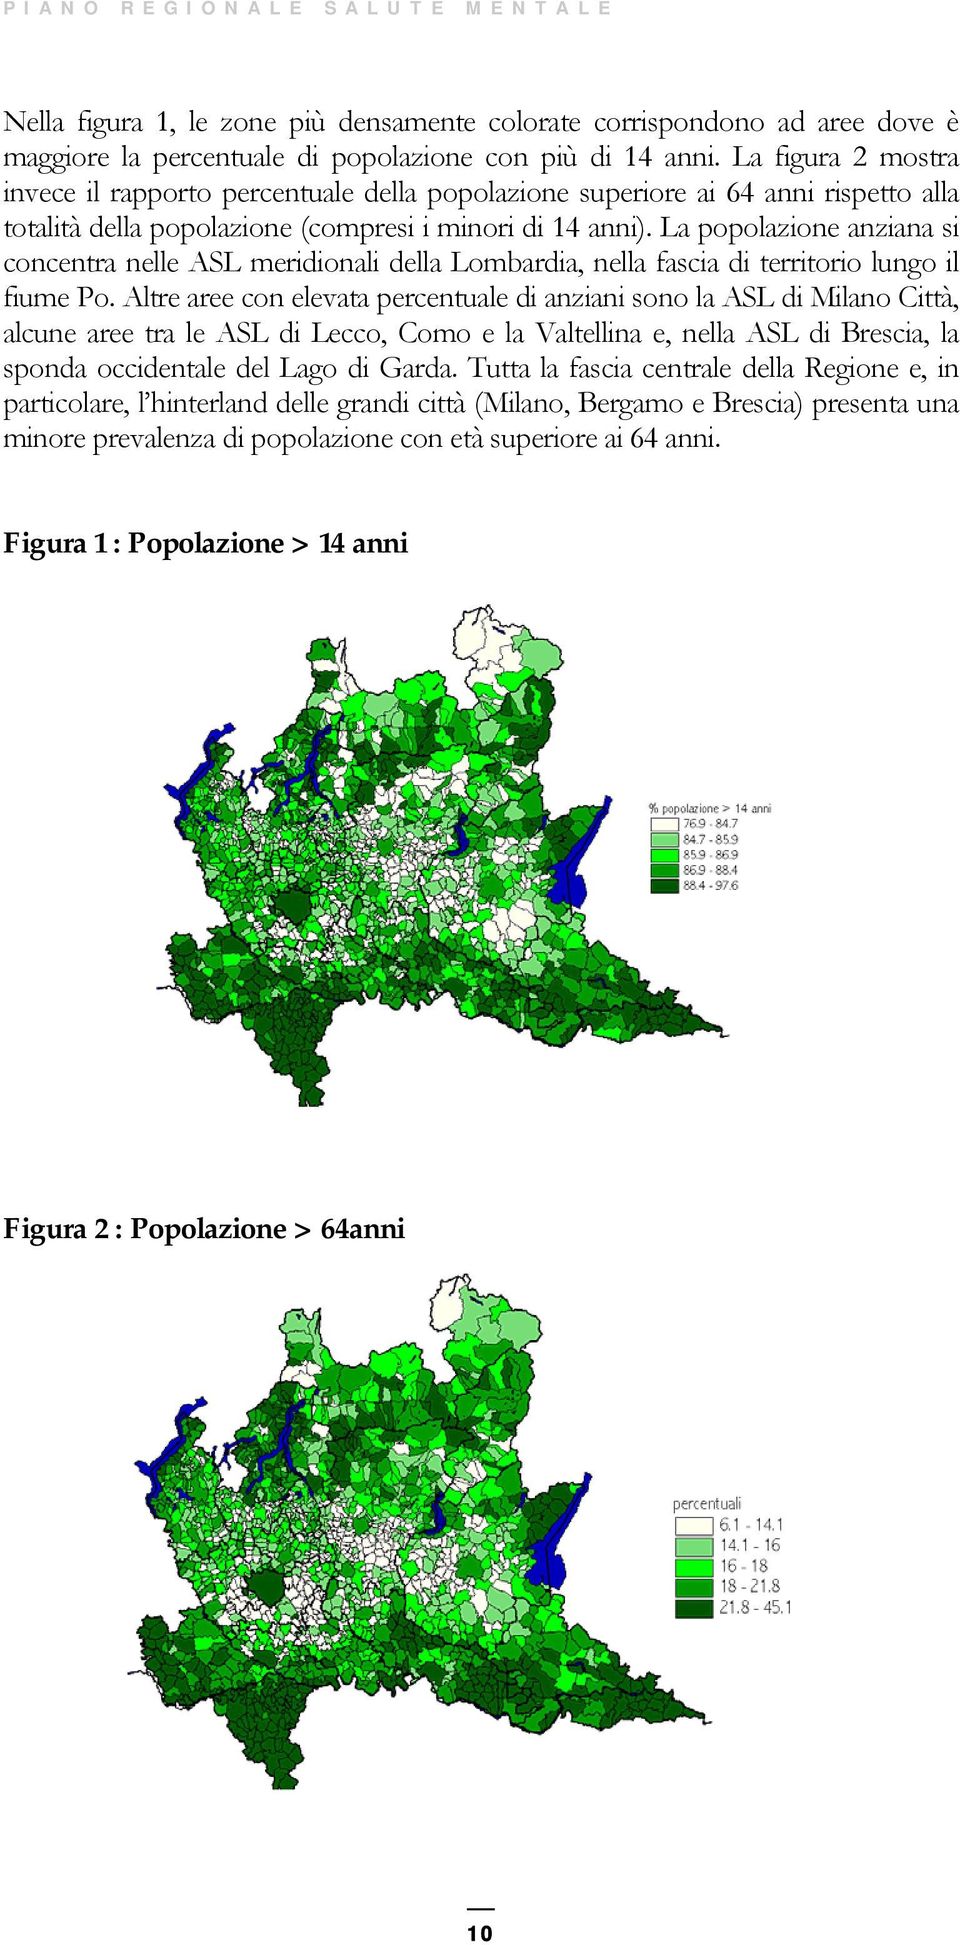 La popolazione anziana si concentra nelle ASL meridionali della Lombardia, nella fascia di territorio lungo il fiume Po.